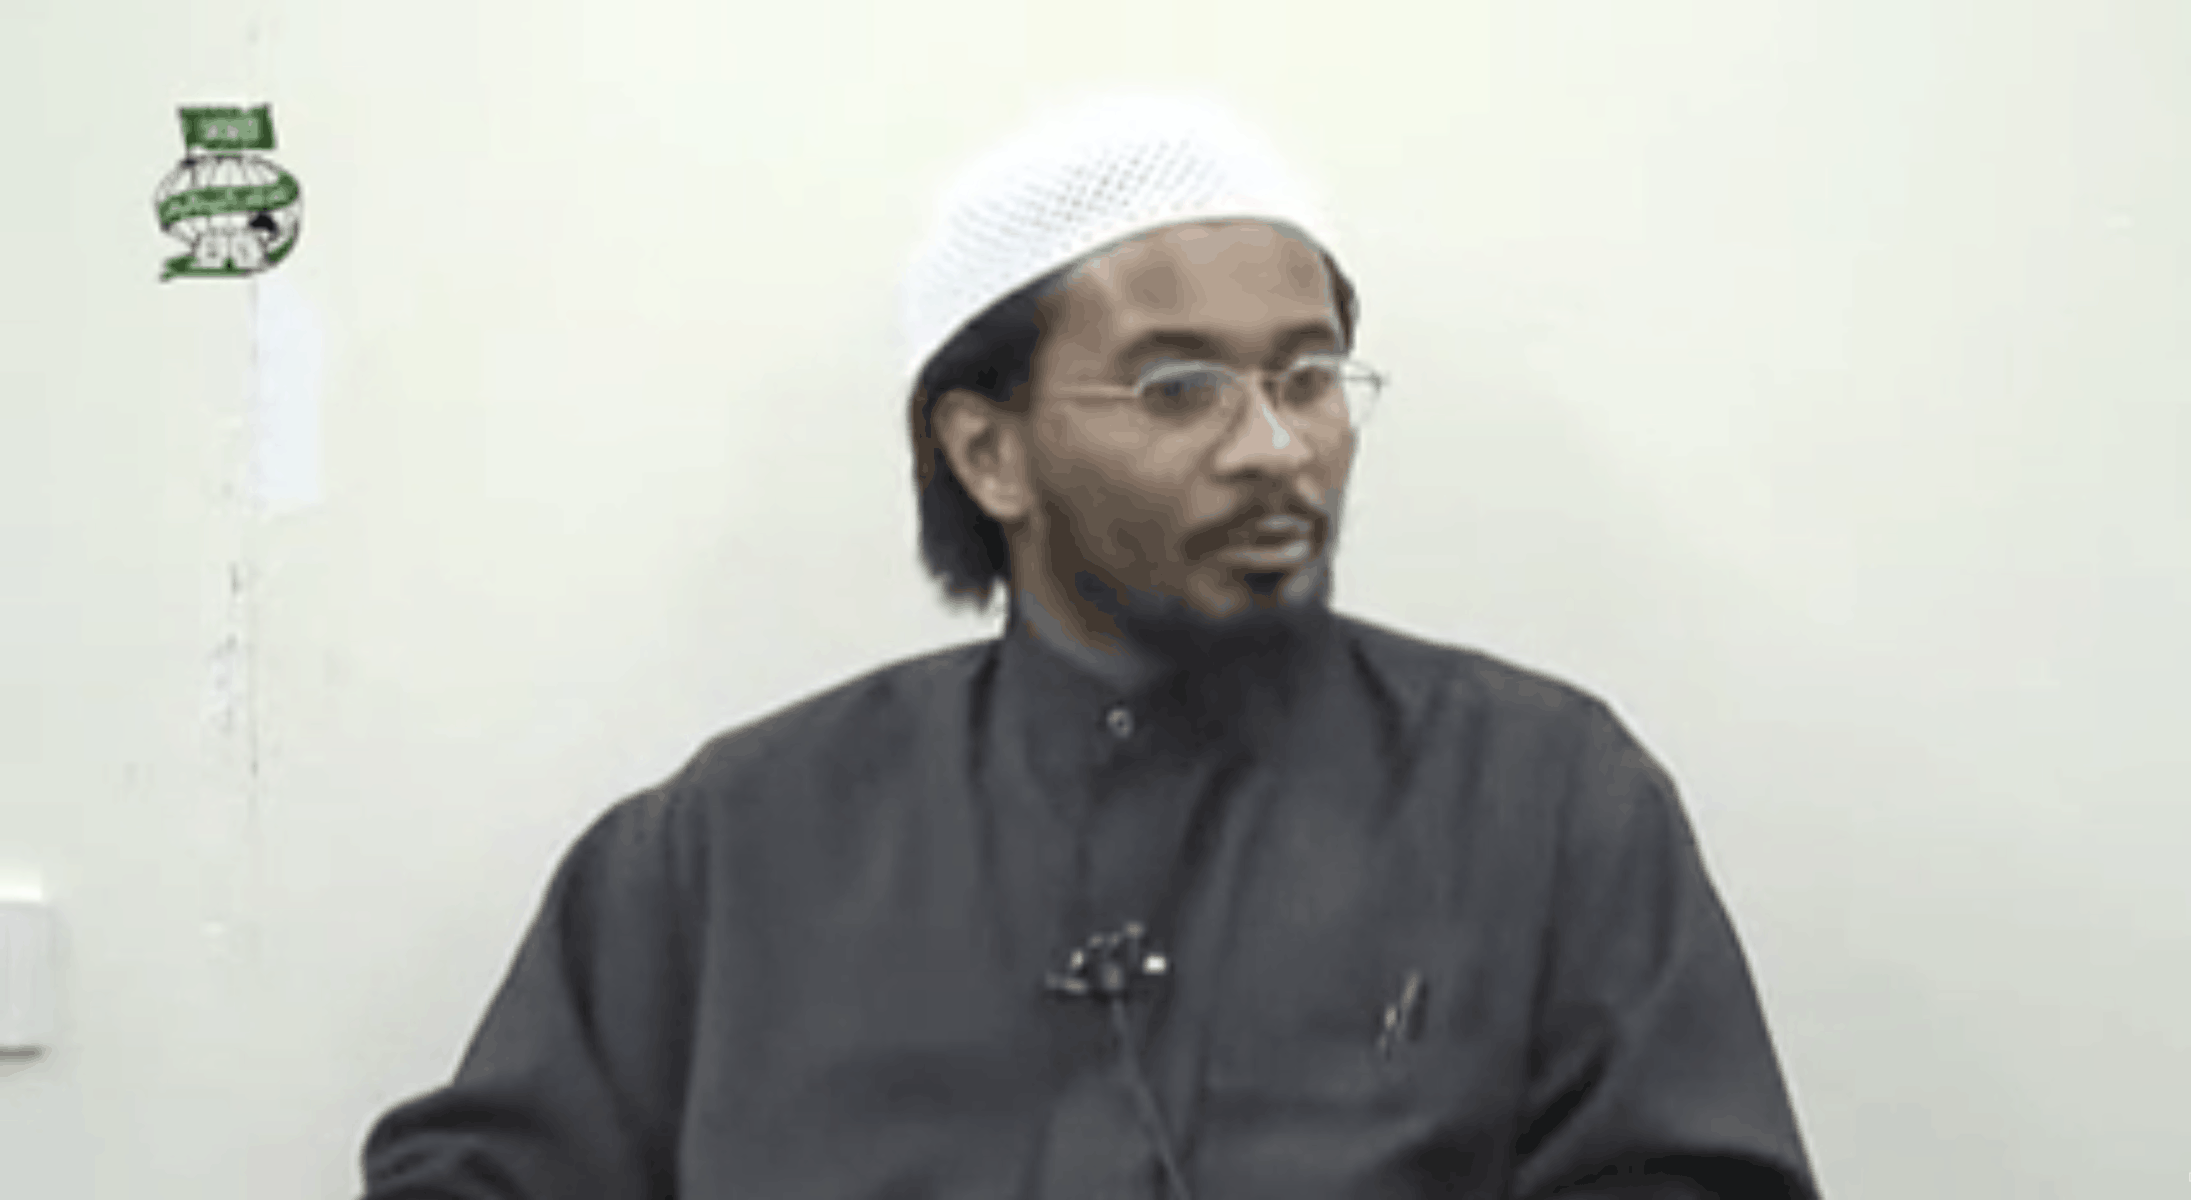 Kamal el Mekki – Giving Dawah in the West